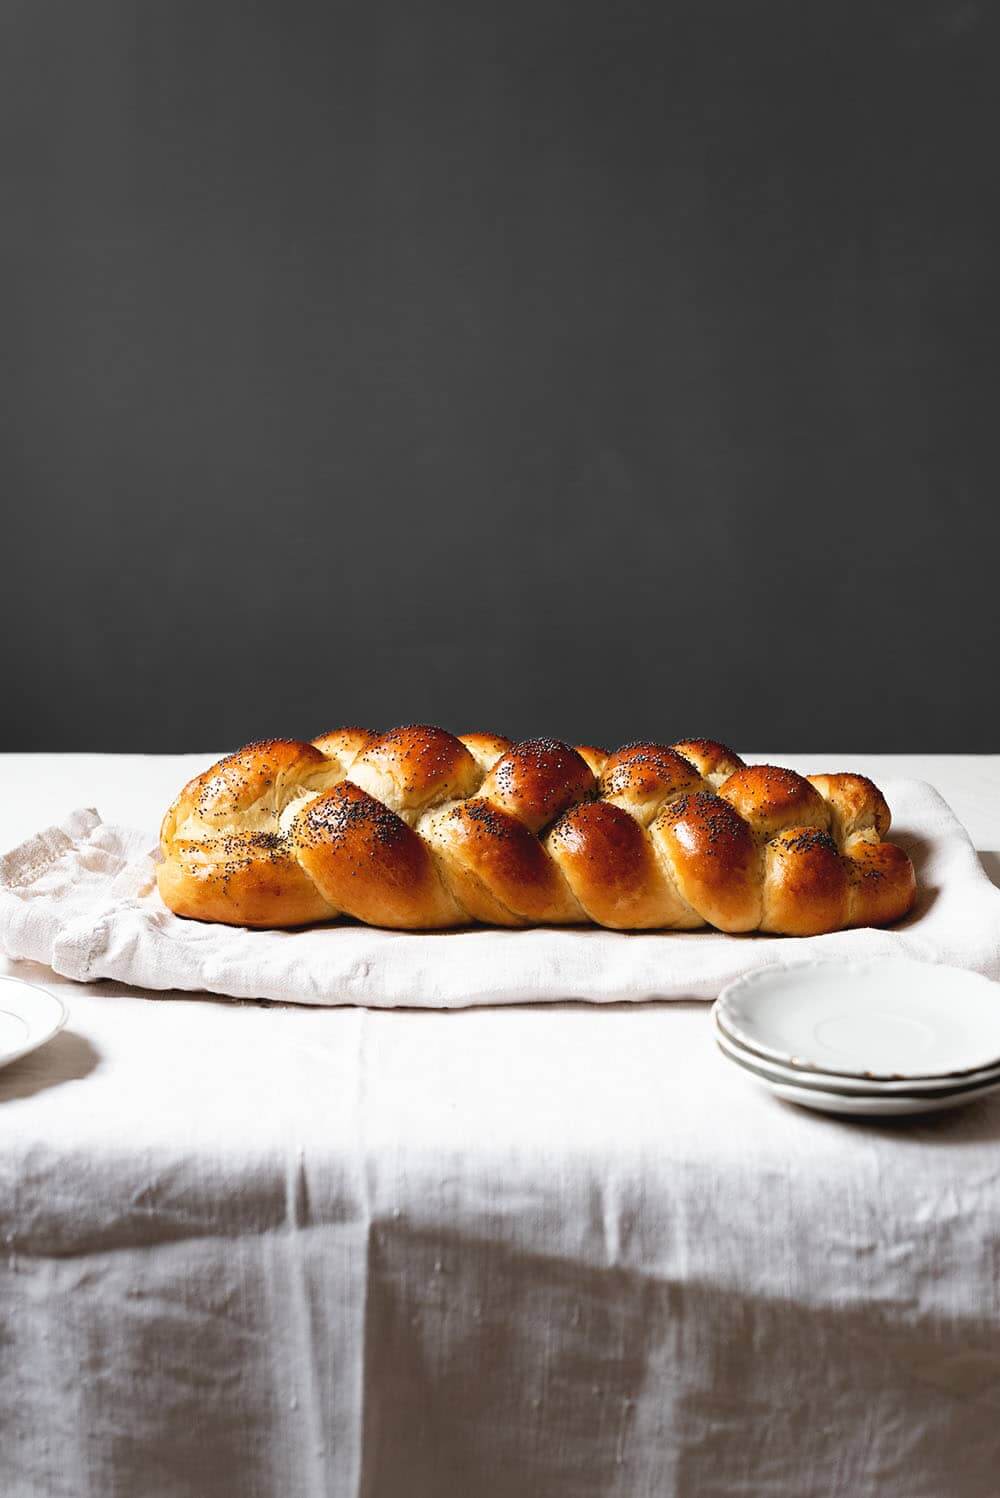 En un paño de cocina blanca está puesto el pan judio sin cortar. Se ve el trenzado de cuatro cabos bonito y la superficie del pan brillante. Delante del pan hay un par de platos blancos.